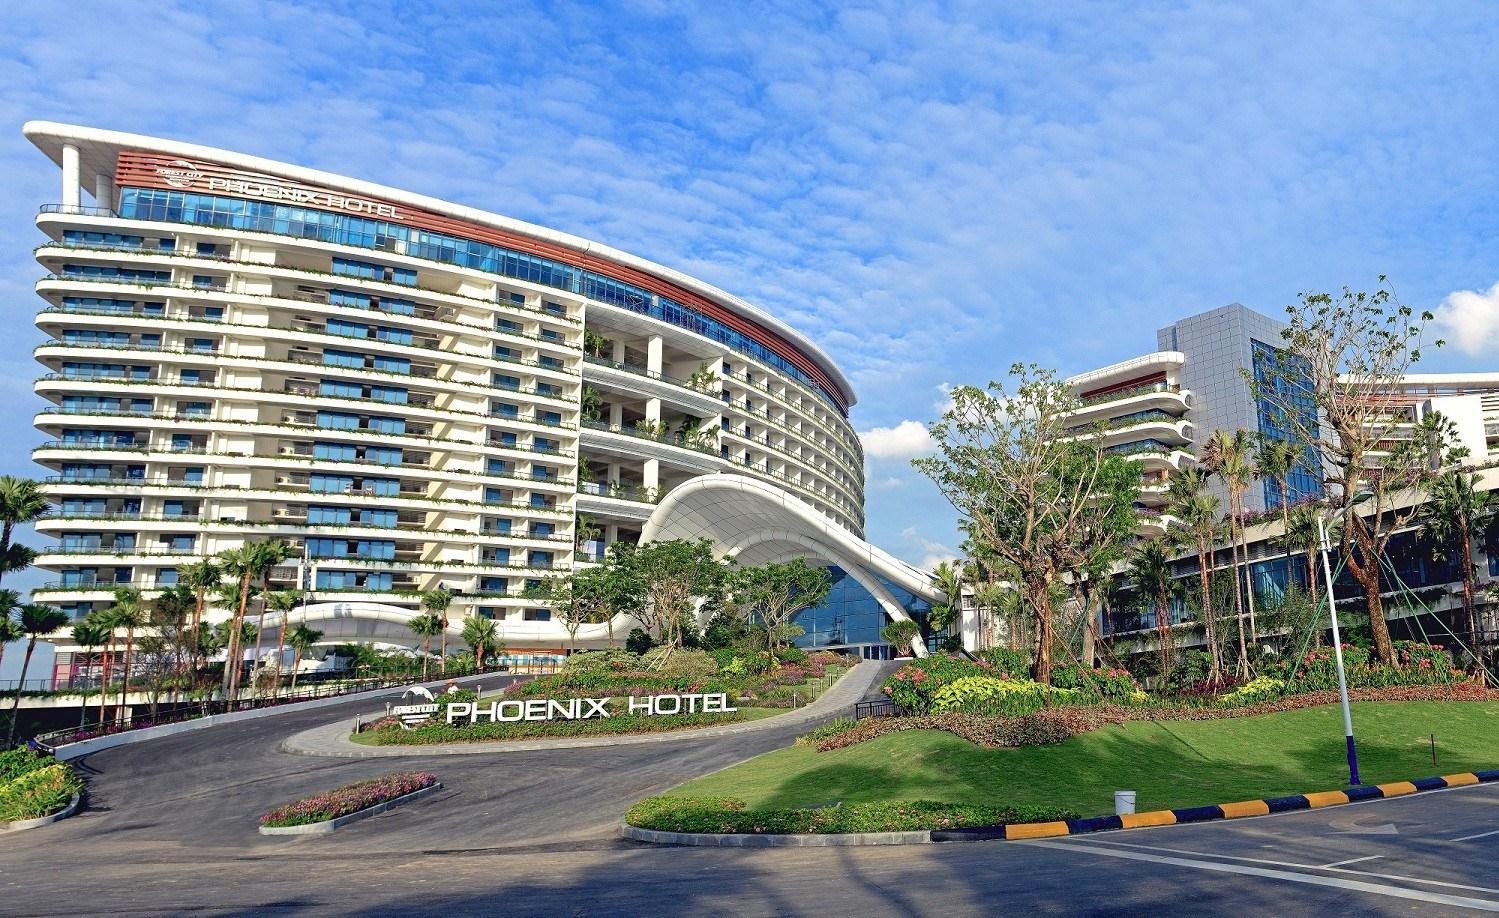 Country Garden Forest City Phoenix Hotel in Johor Bahru, MY